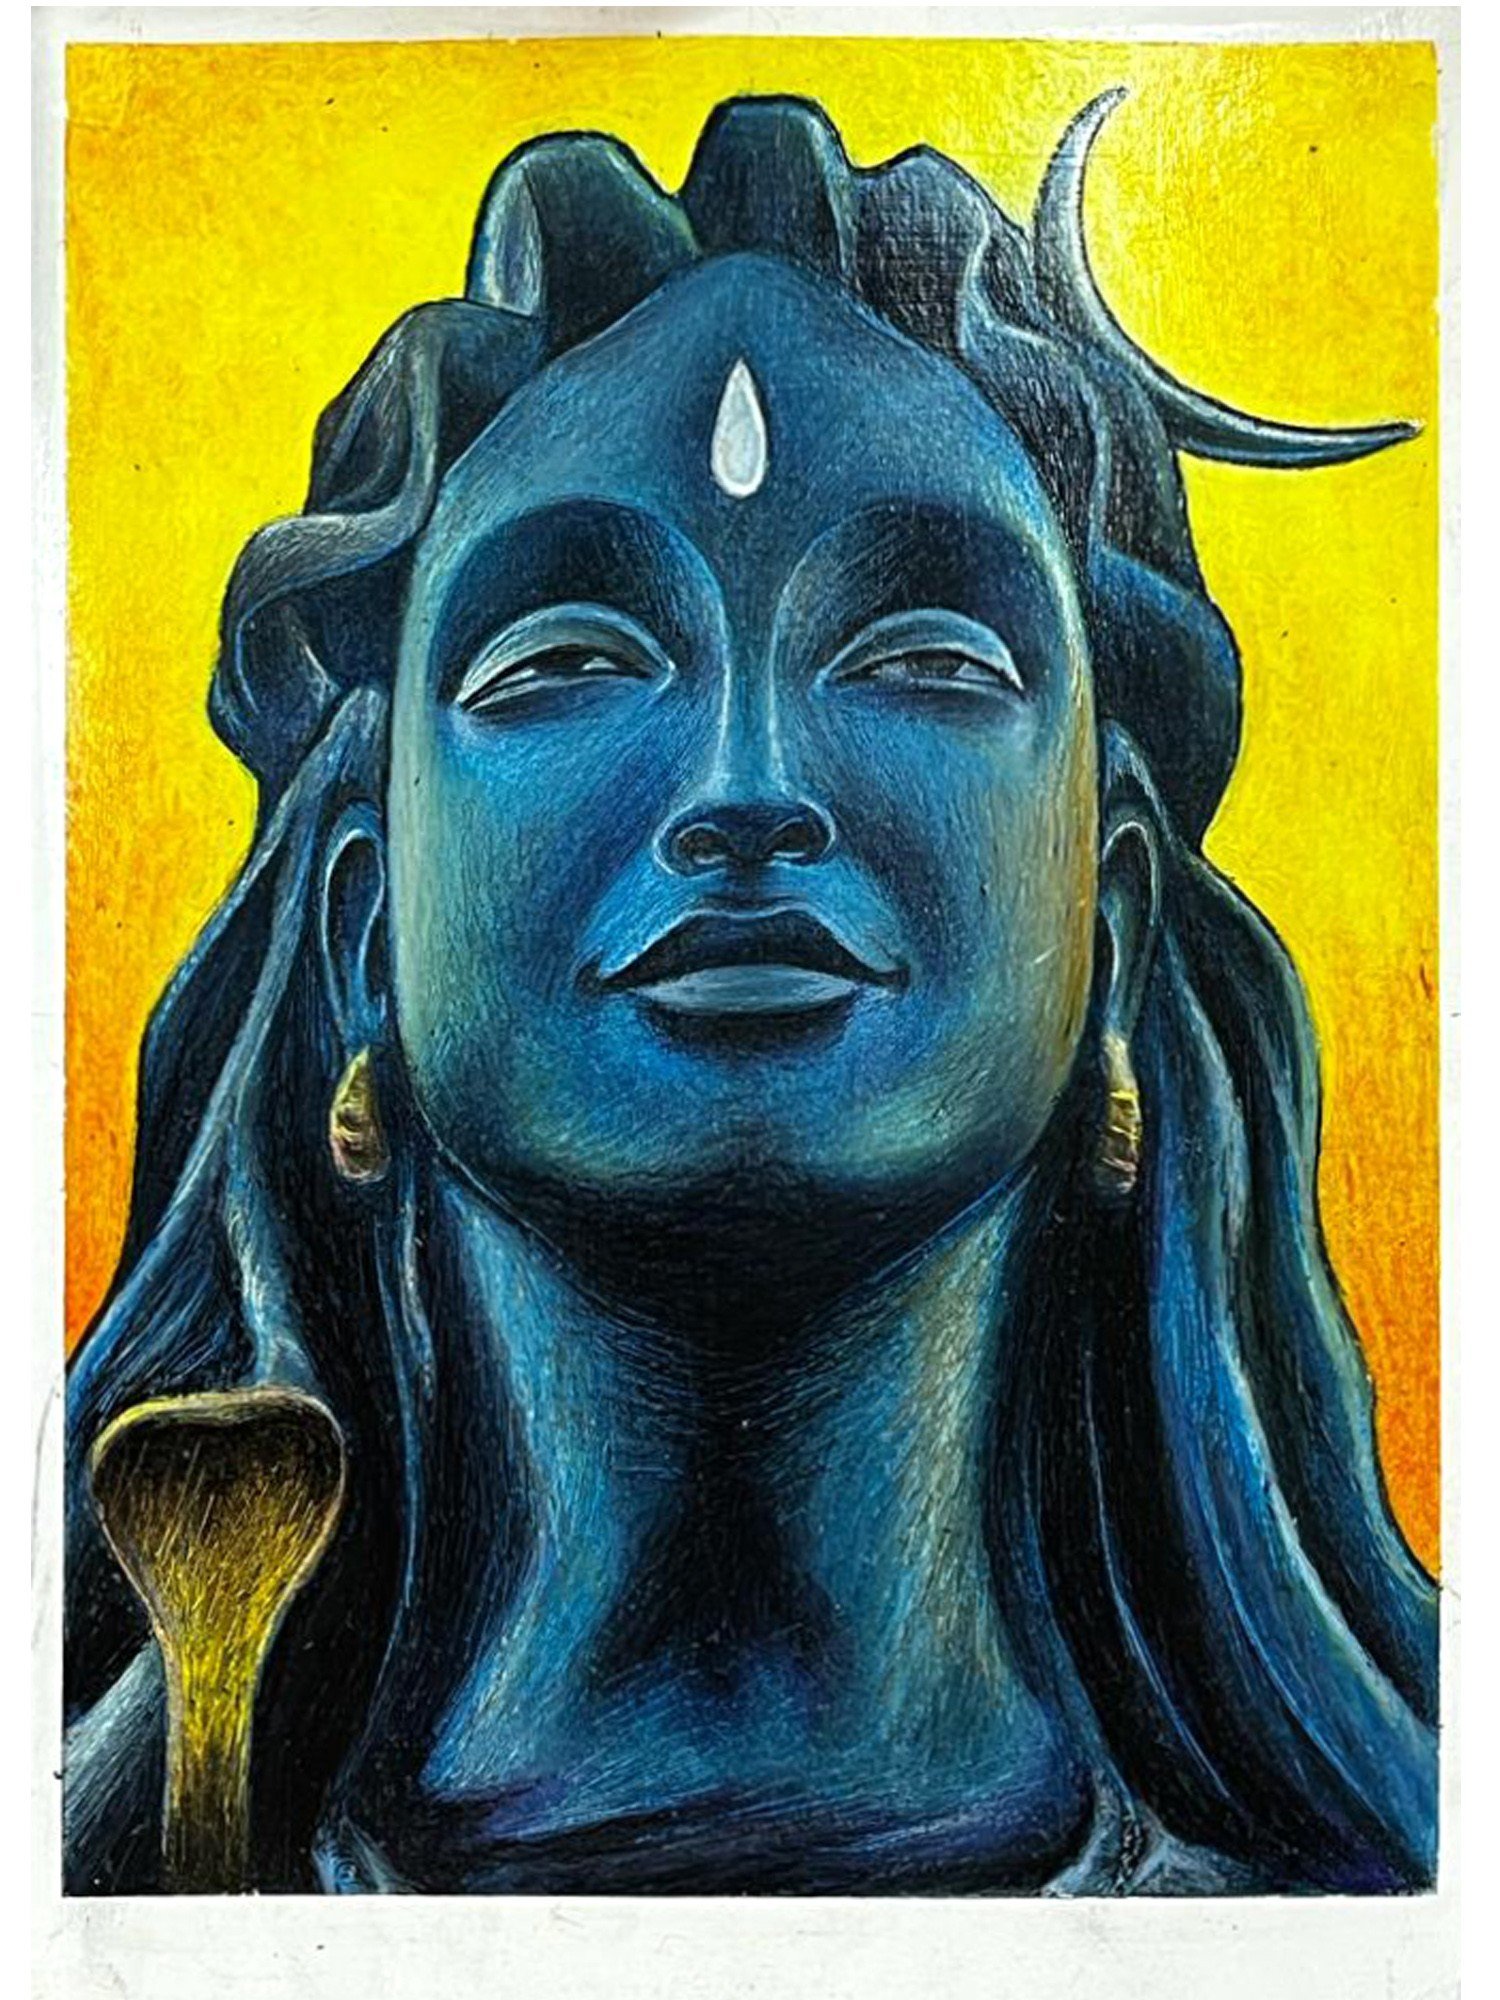 Aadiyogi Shiva 🌼 🌺 #artist @xx_innocent_rider_09 #art #adiyogi #shiva  #wallpainting #wallart #drawing #harharmahadev🙏 #blacklover… | Instagram